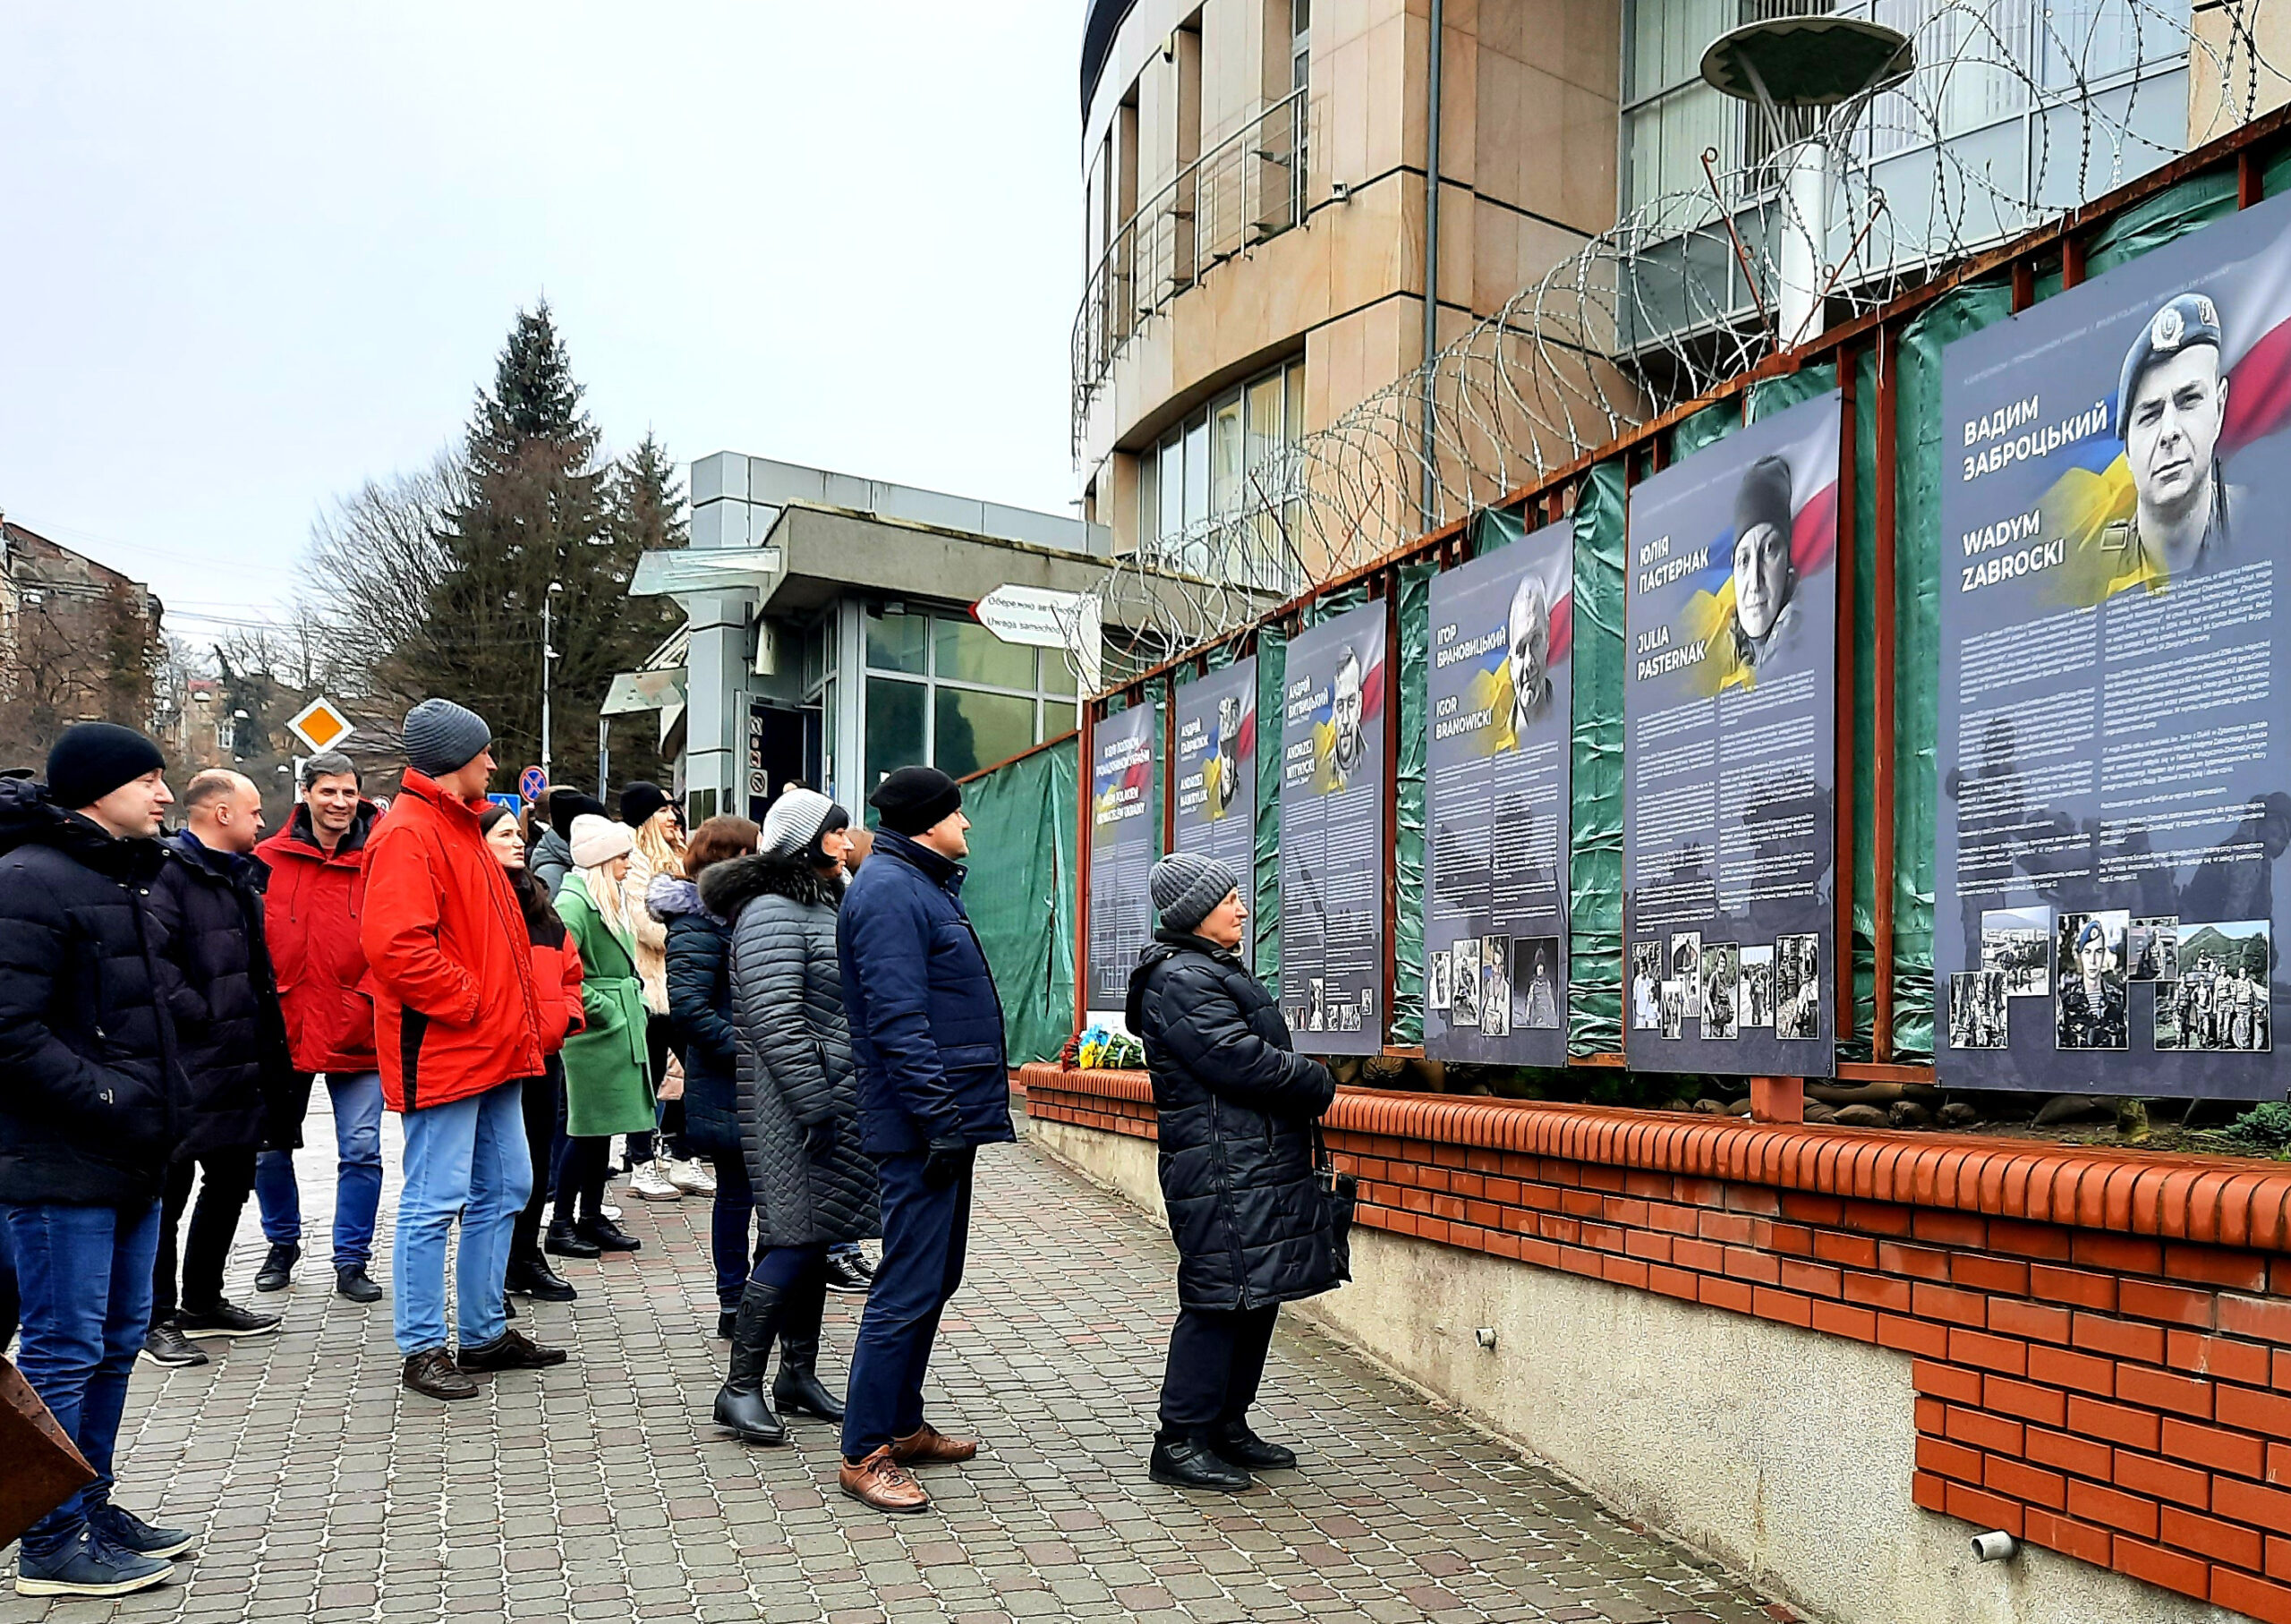 Wystawa o żołnierzach ukraińskich polskiego pochodzenia, którzy zginęli broniąc Ukrainy